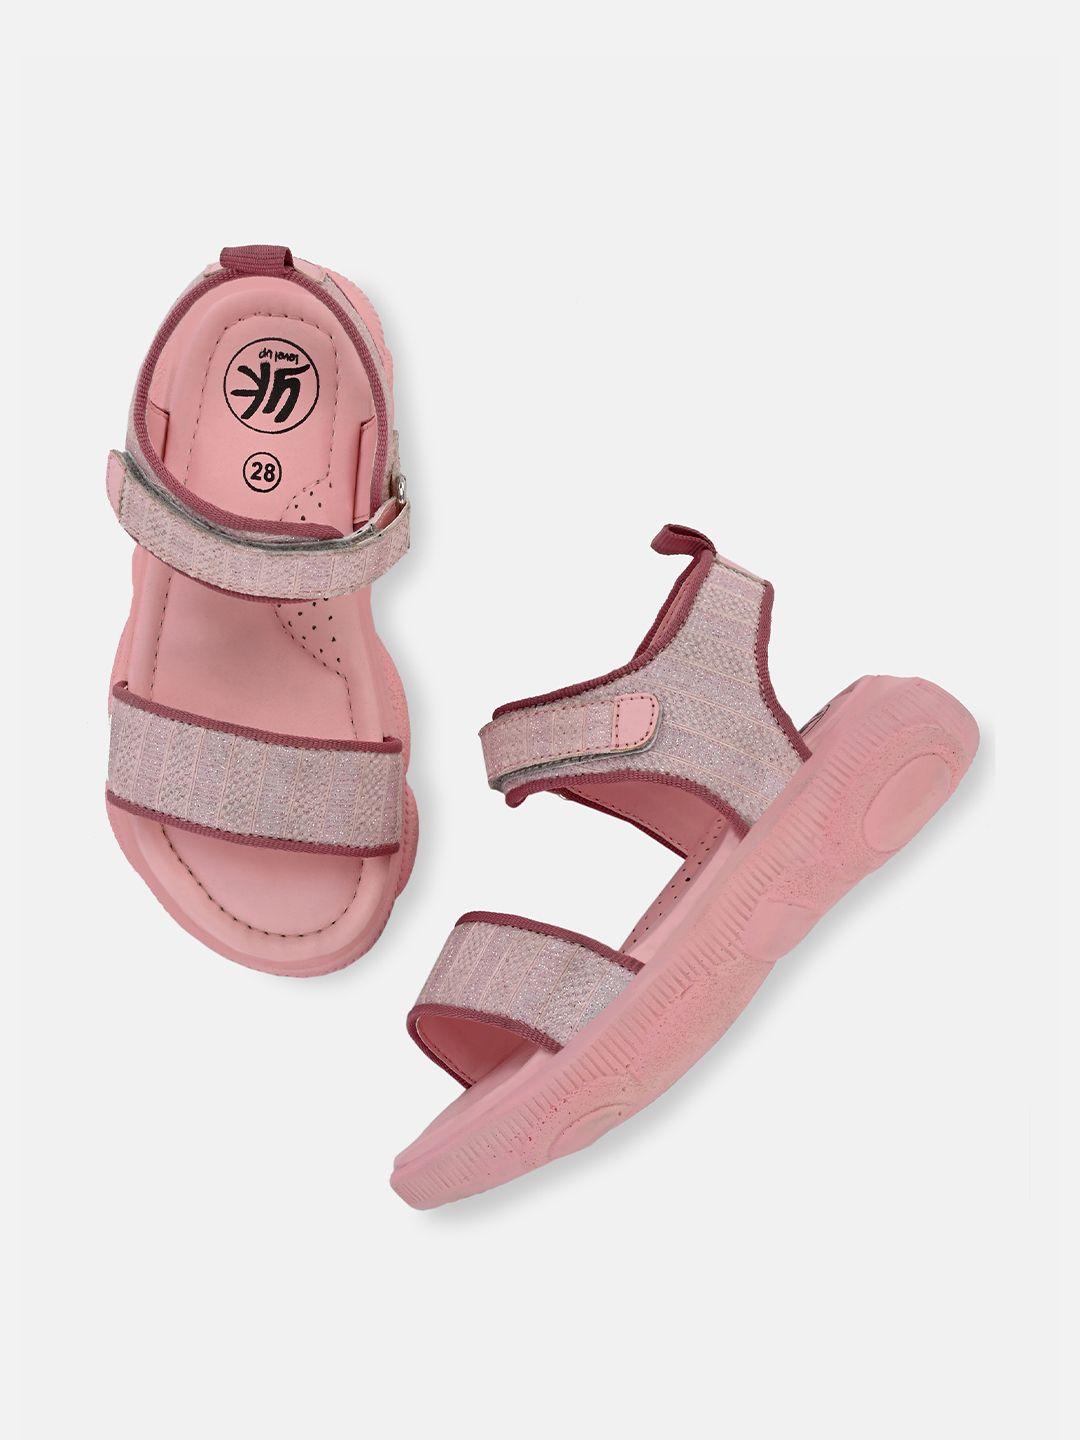 yk girls pink sports sandals